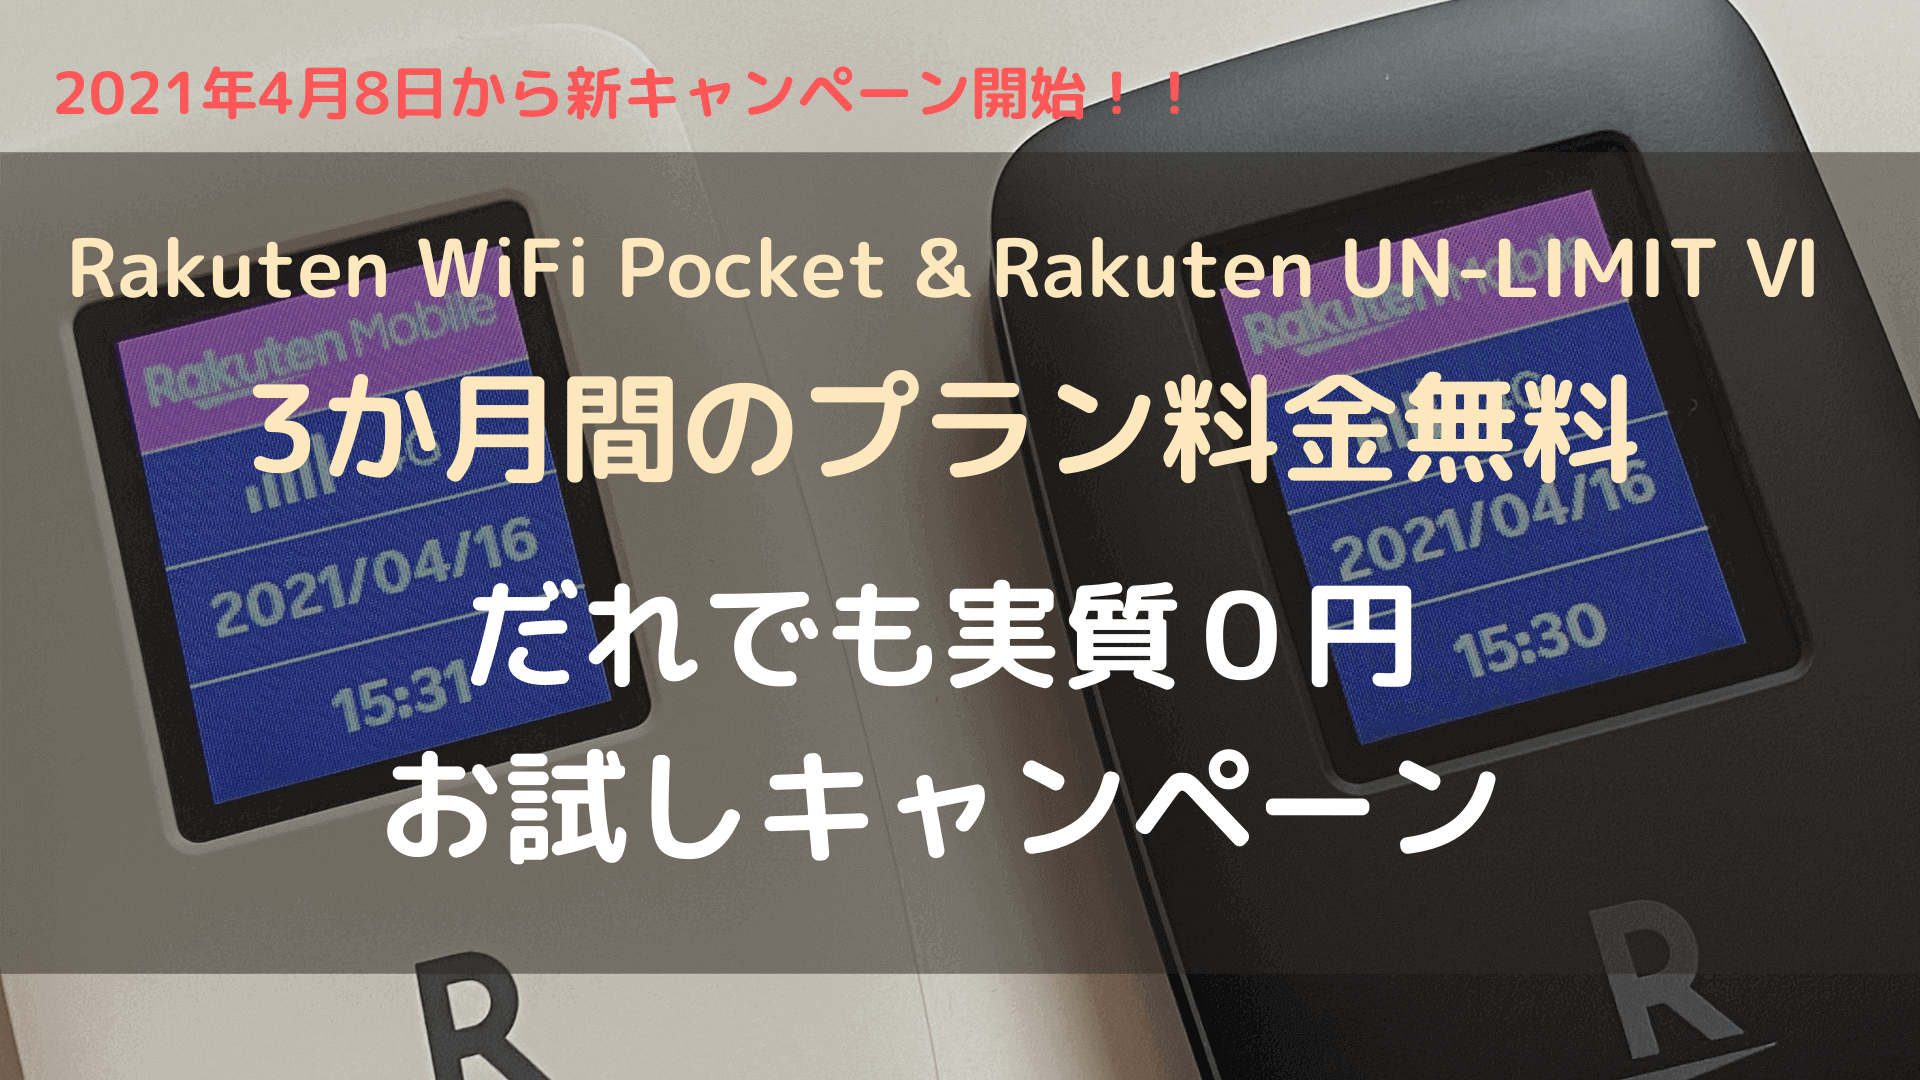 【3か月間プラン料金無料】Rakuten WiFi Pocket で気軽にネット環境を！「だれでも実質０円お試しキャンペーン」ネット申し込みの手引き